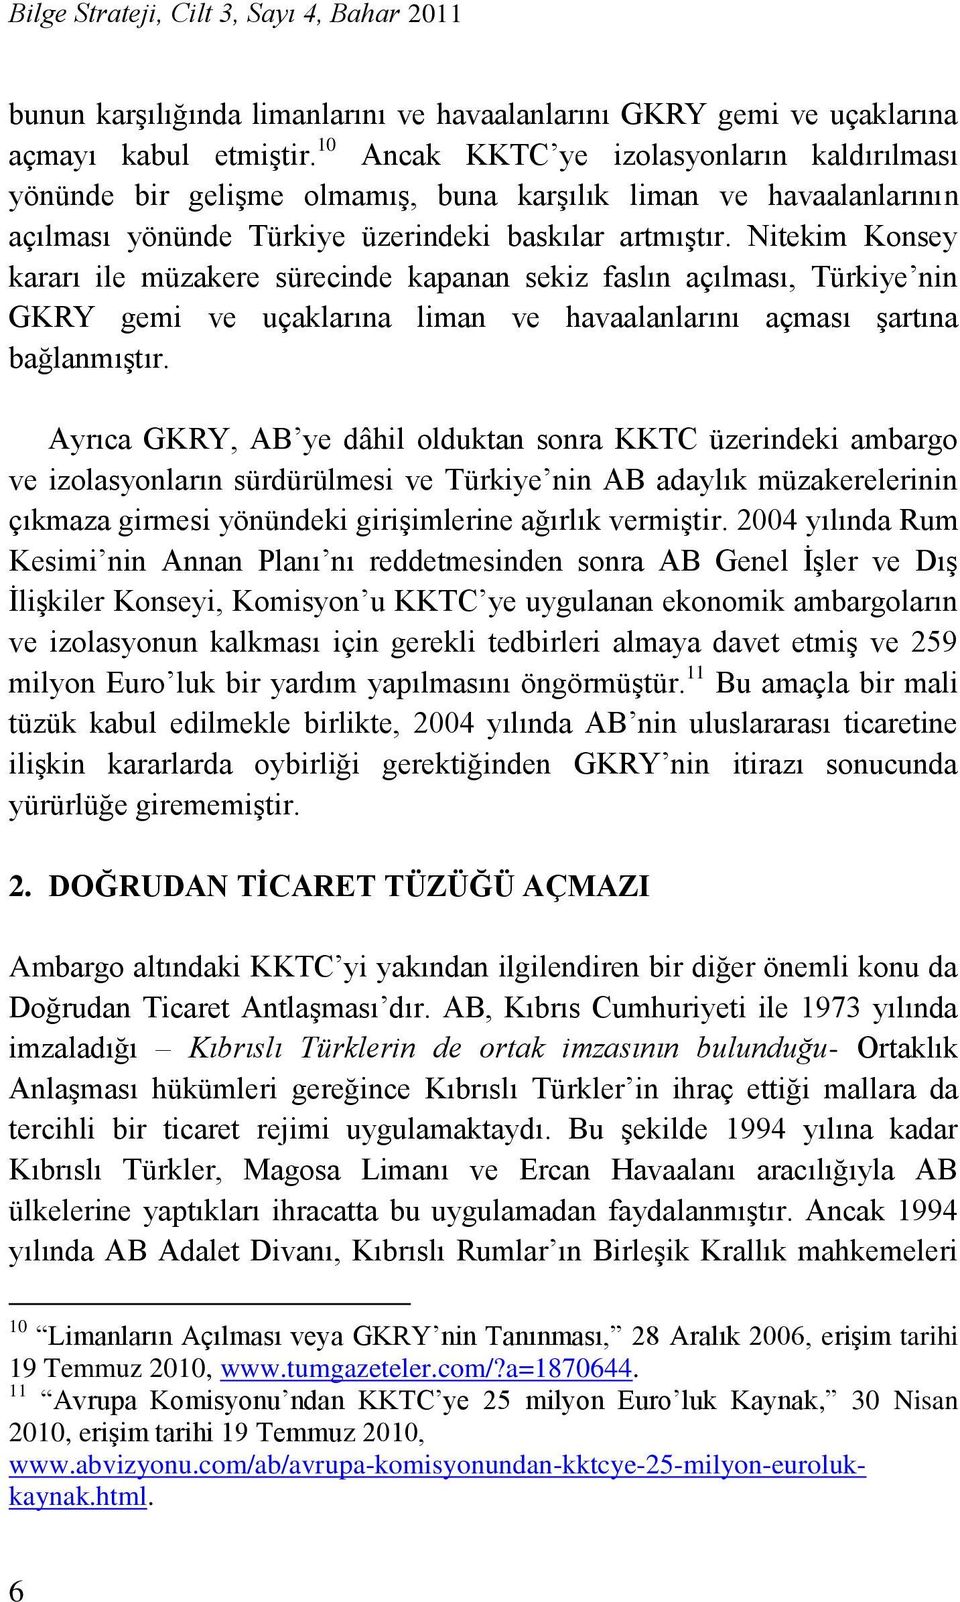 Nitekim Konsey kararı ile müzakere sürecinde kapanan sekiz faslın açılması, Türkiye nin GKRY gemi ve uçaklarına liman ve havaalanlarını açması şartına bağlanmıştır.